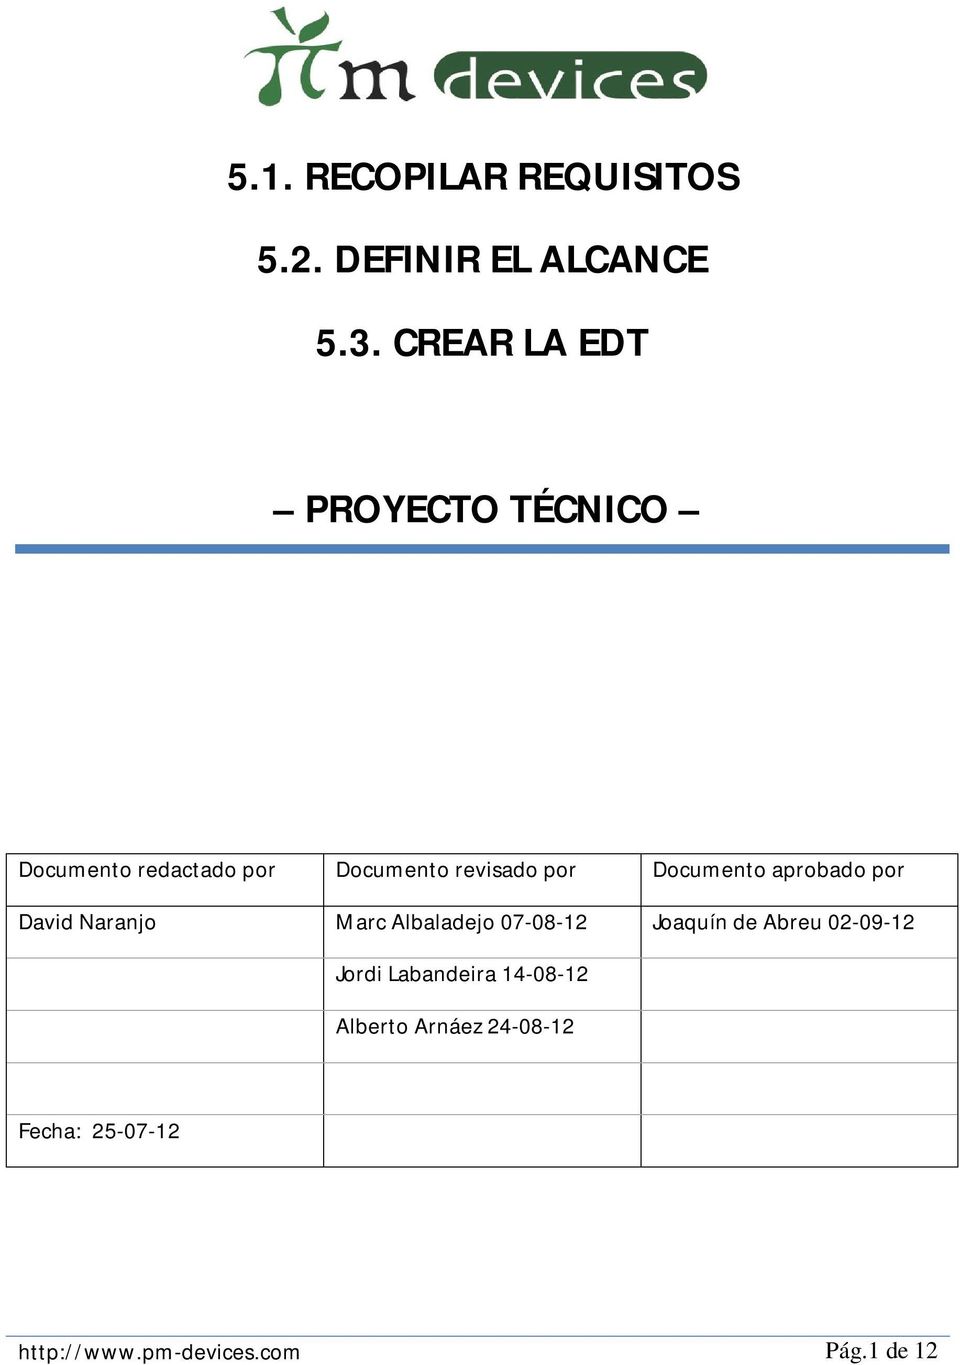 Documento aprobado por David Naranjo Marc Albaladejo 07-08-12 Joaquín de Abreu